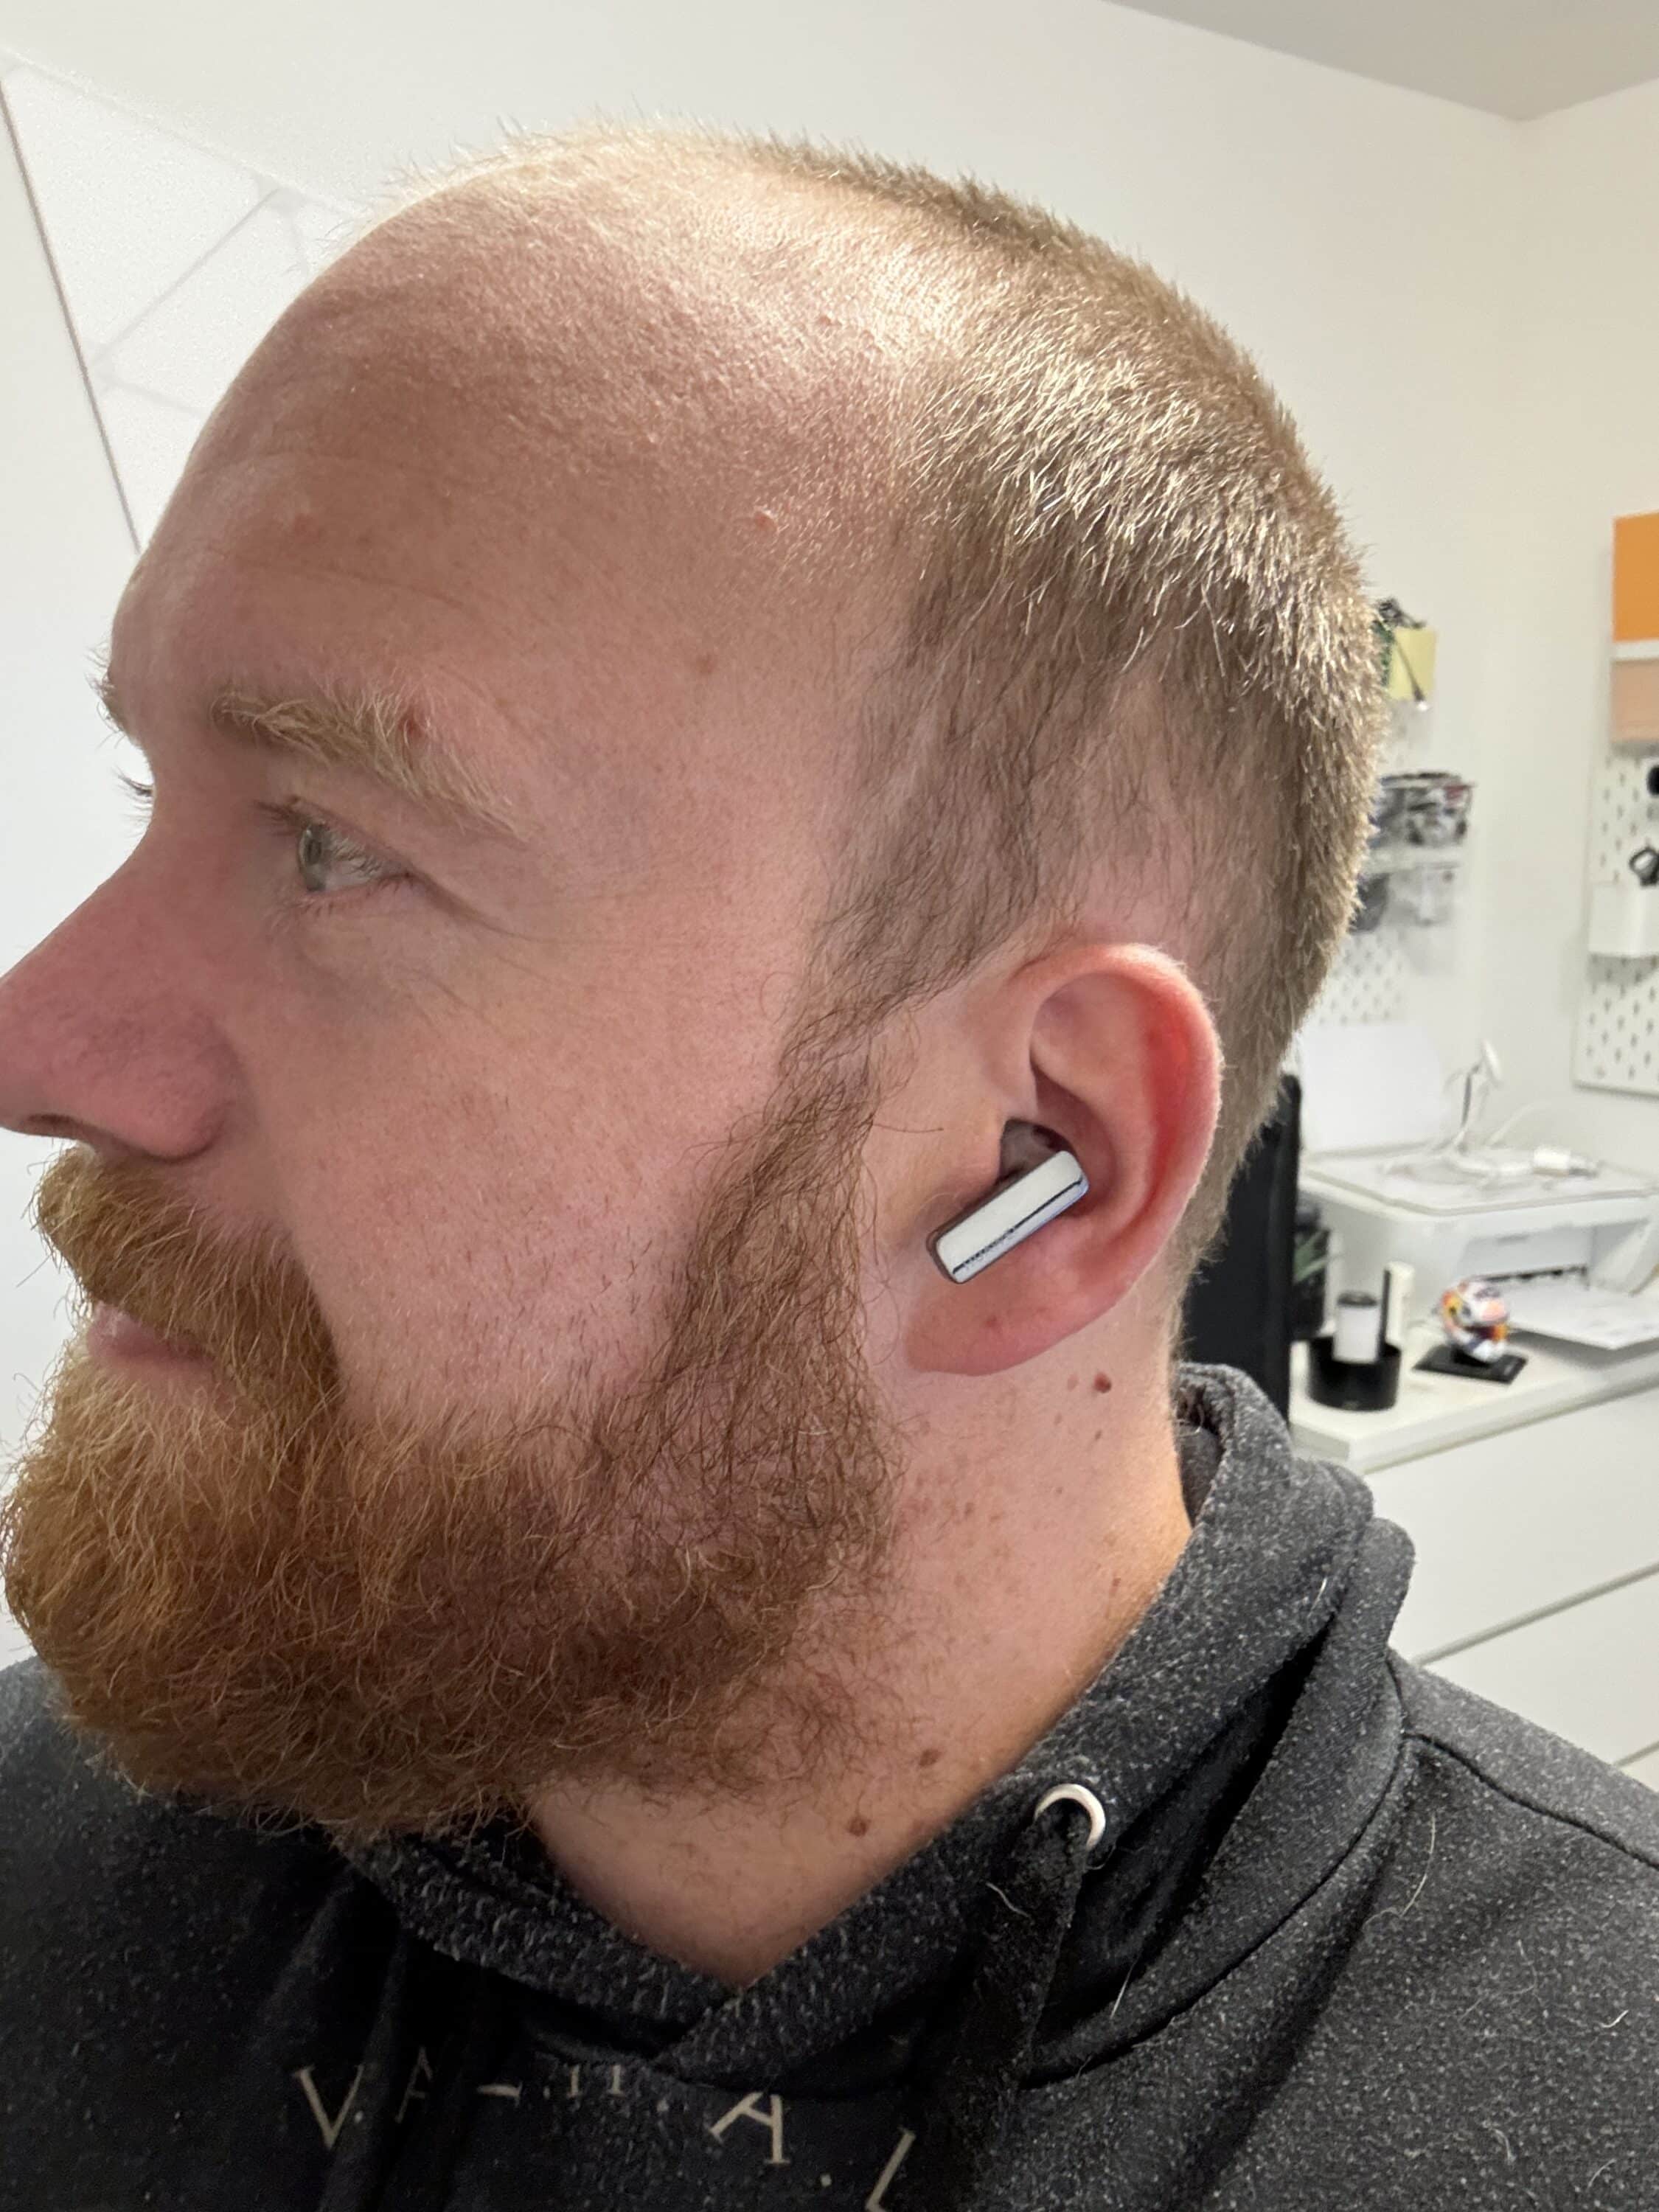 Huawei FreeBuds Pro 3 Test: Powerful in-ear headphones